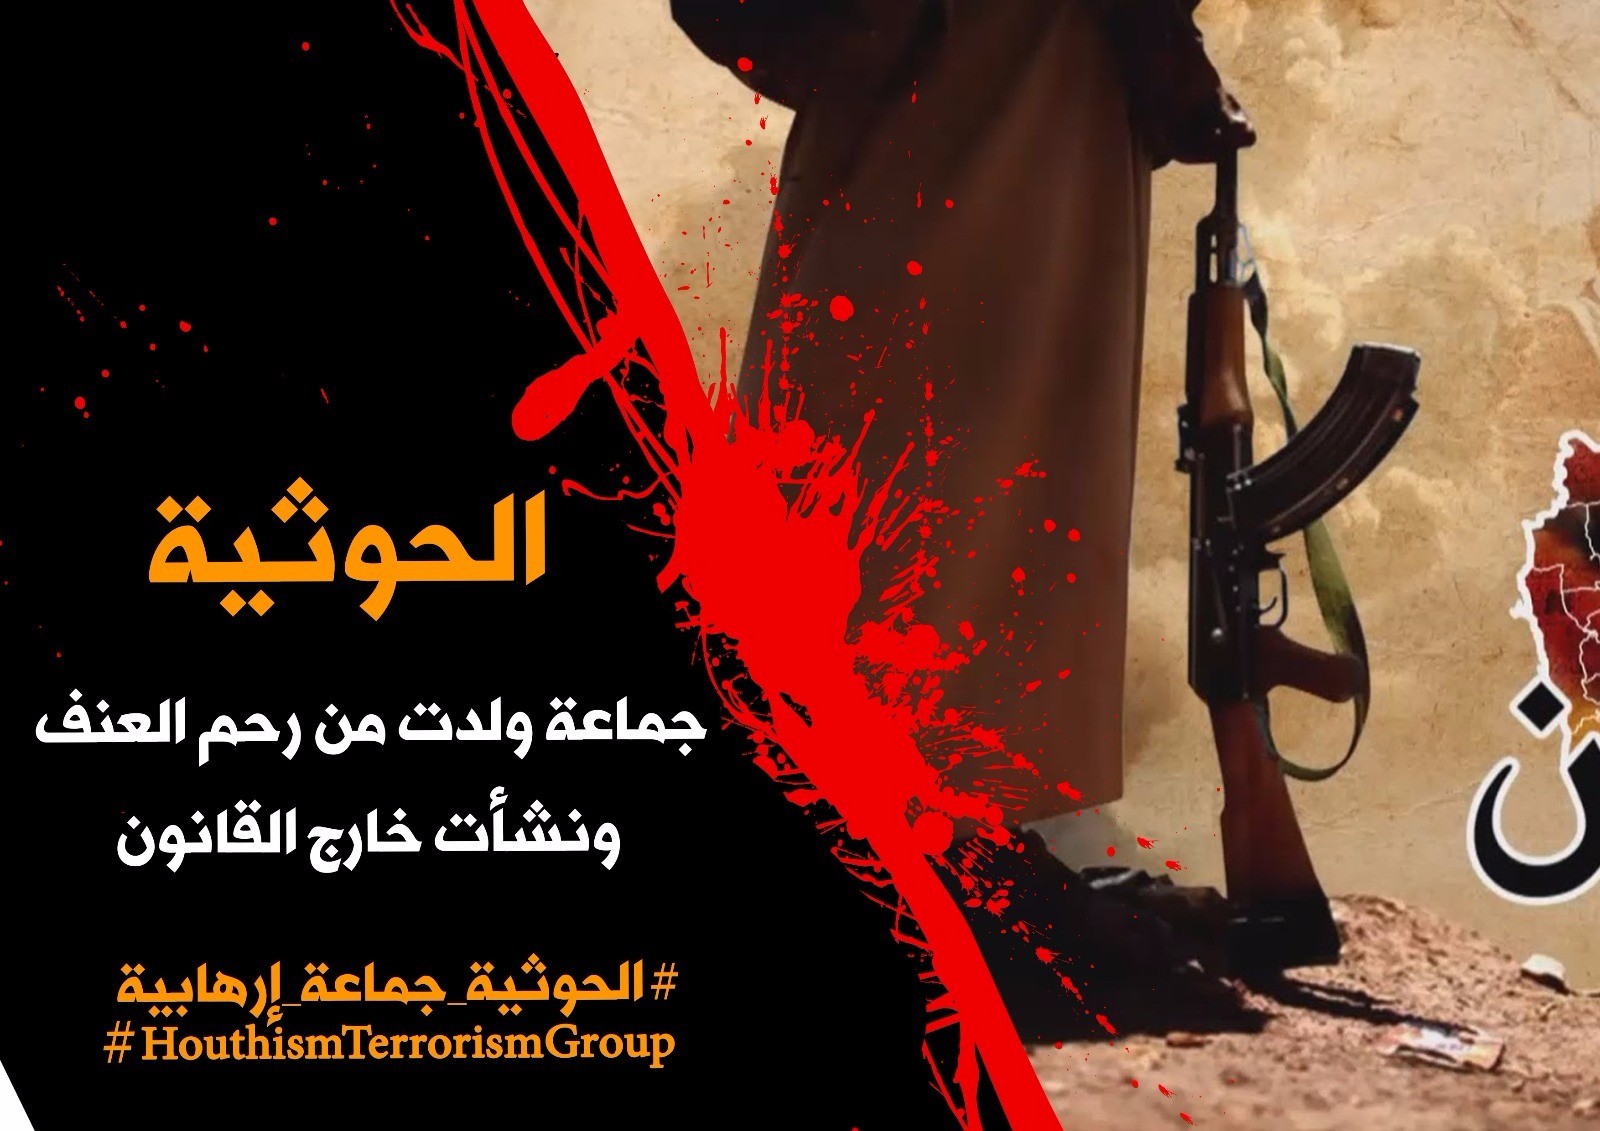 تدشين حملة " الحوثية جماعة  ارهابية " في مواقع التواصل الاجتماعي 